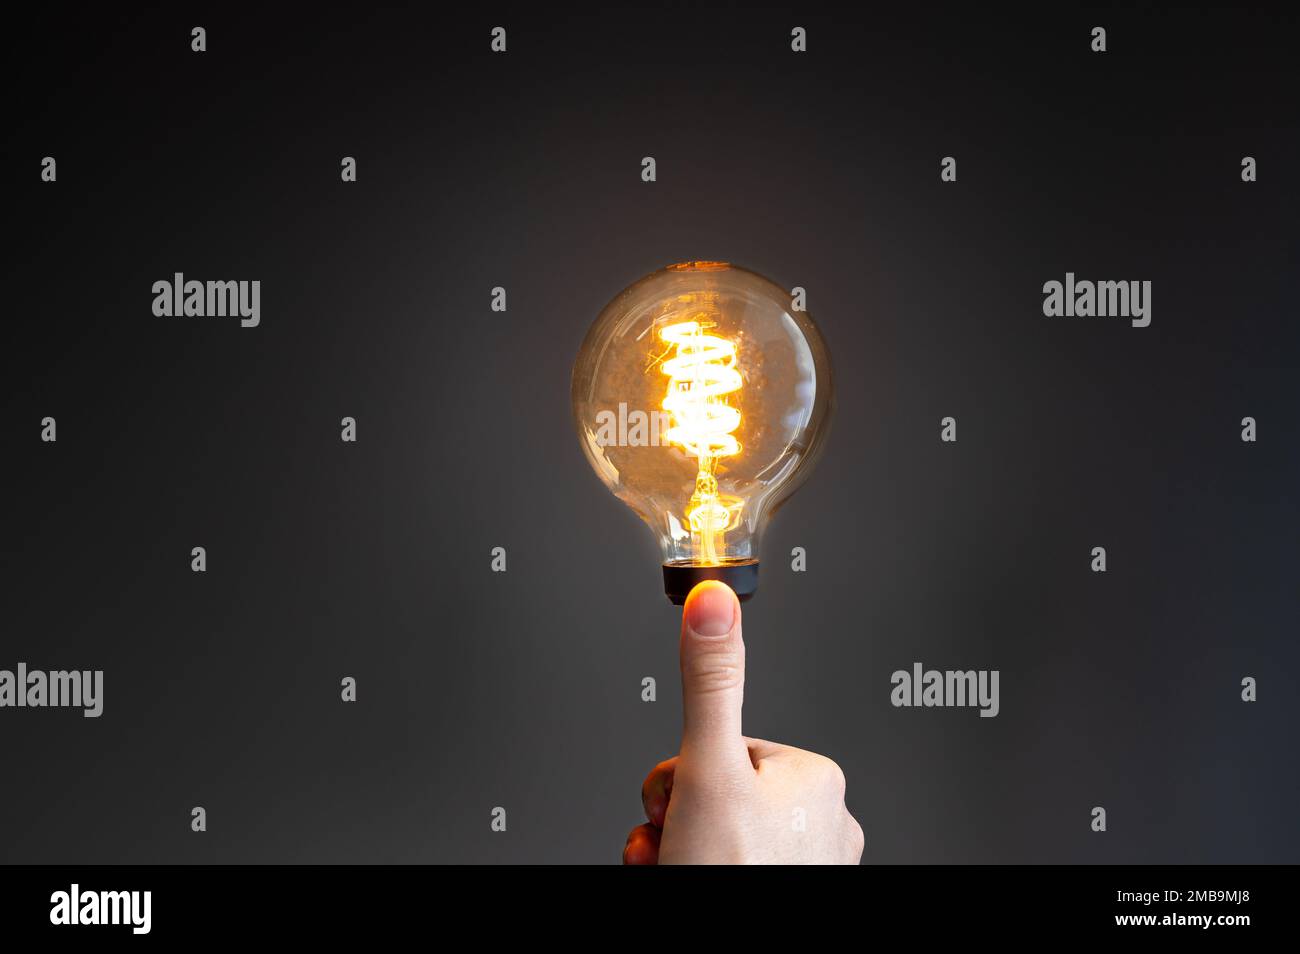 Symbole d'économie d'énergie. La main tient une ampoule à incandescence où l'intensité lumineuse est faible. Banque D'Images